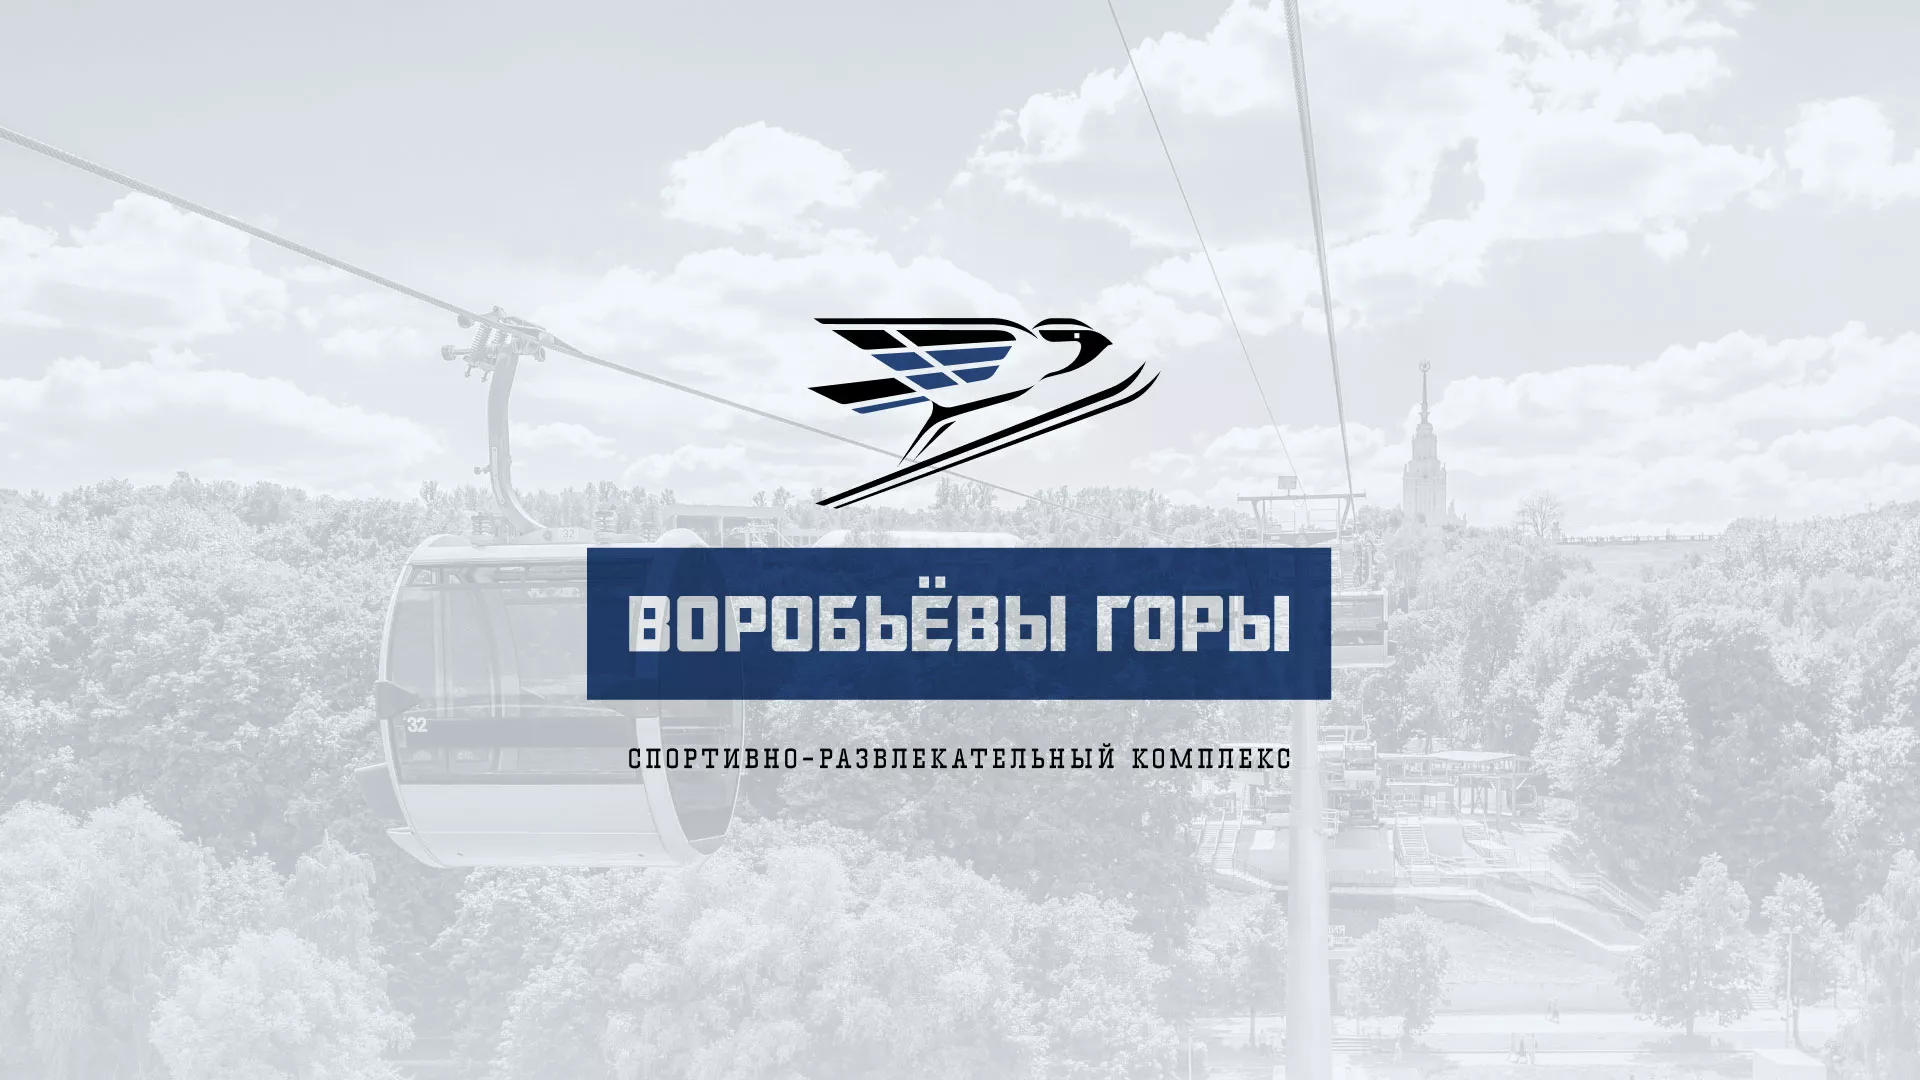 Разработка сайта в Устюжне для спортивно-развлекательного комплекса «Воробьёвы горы»